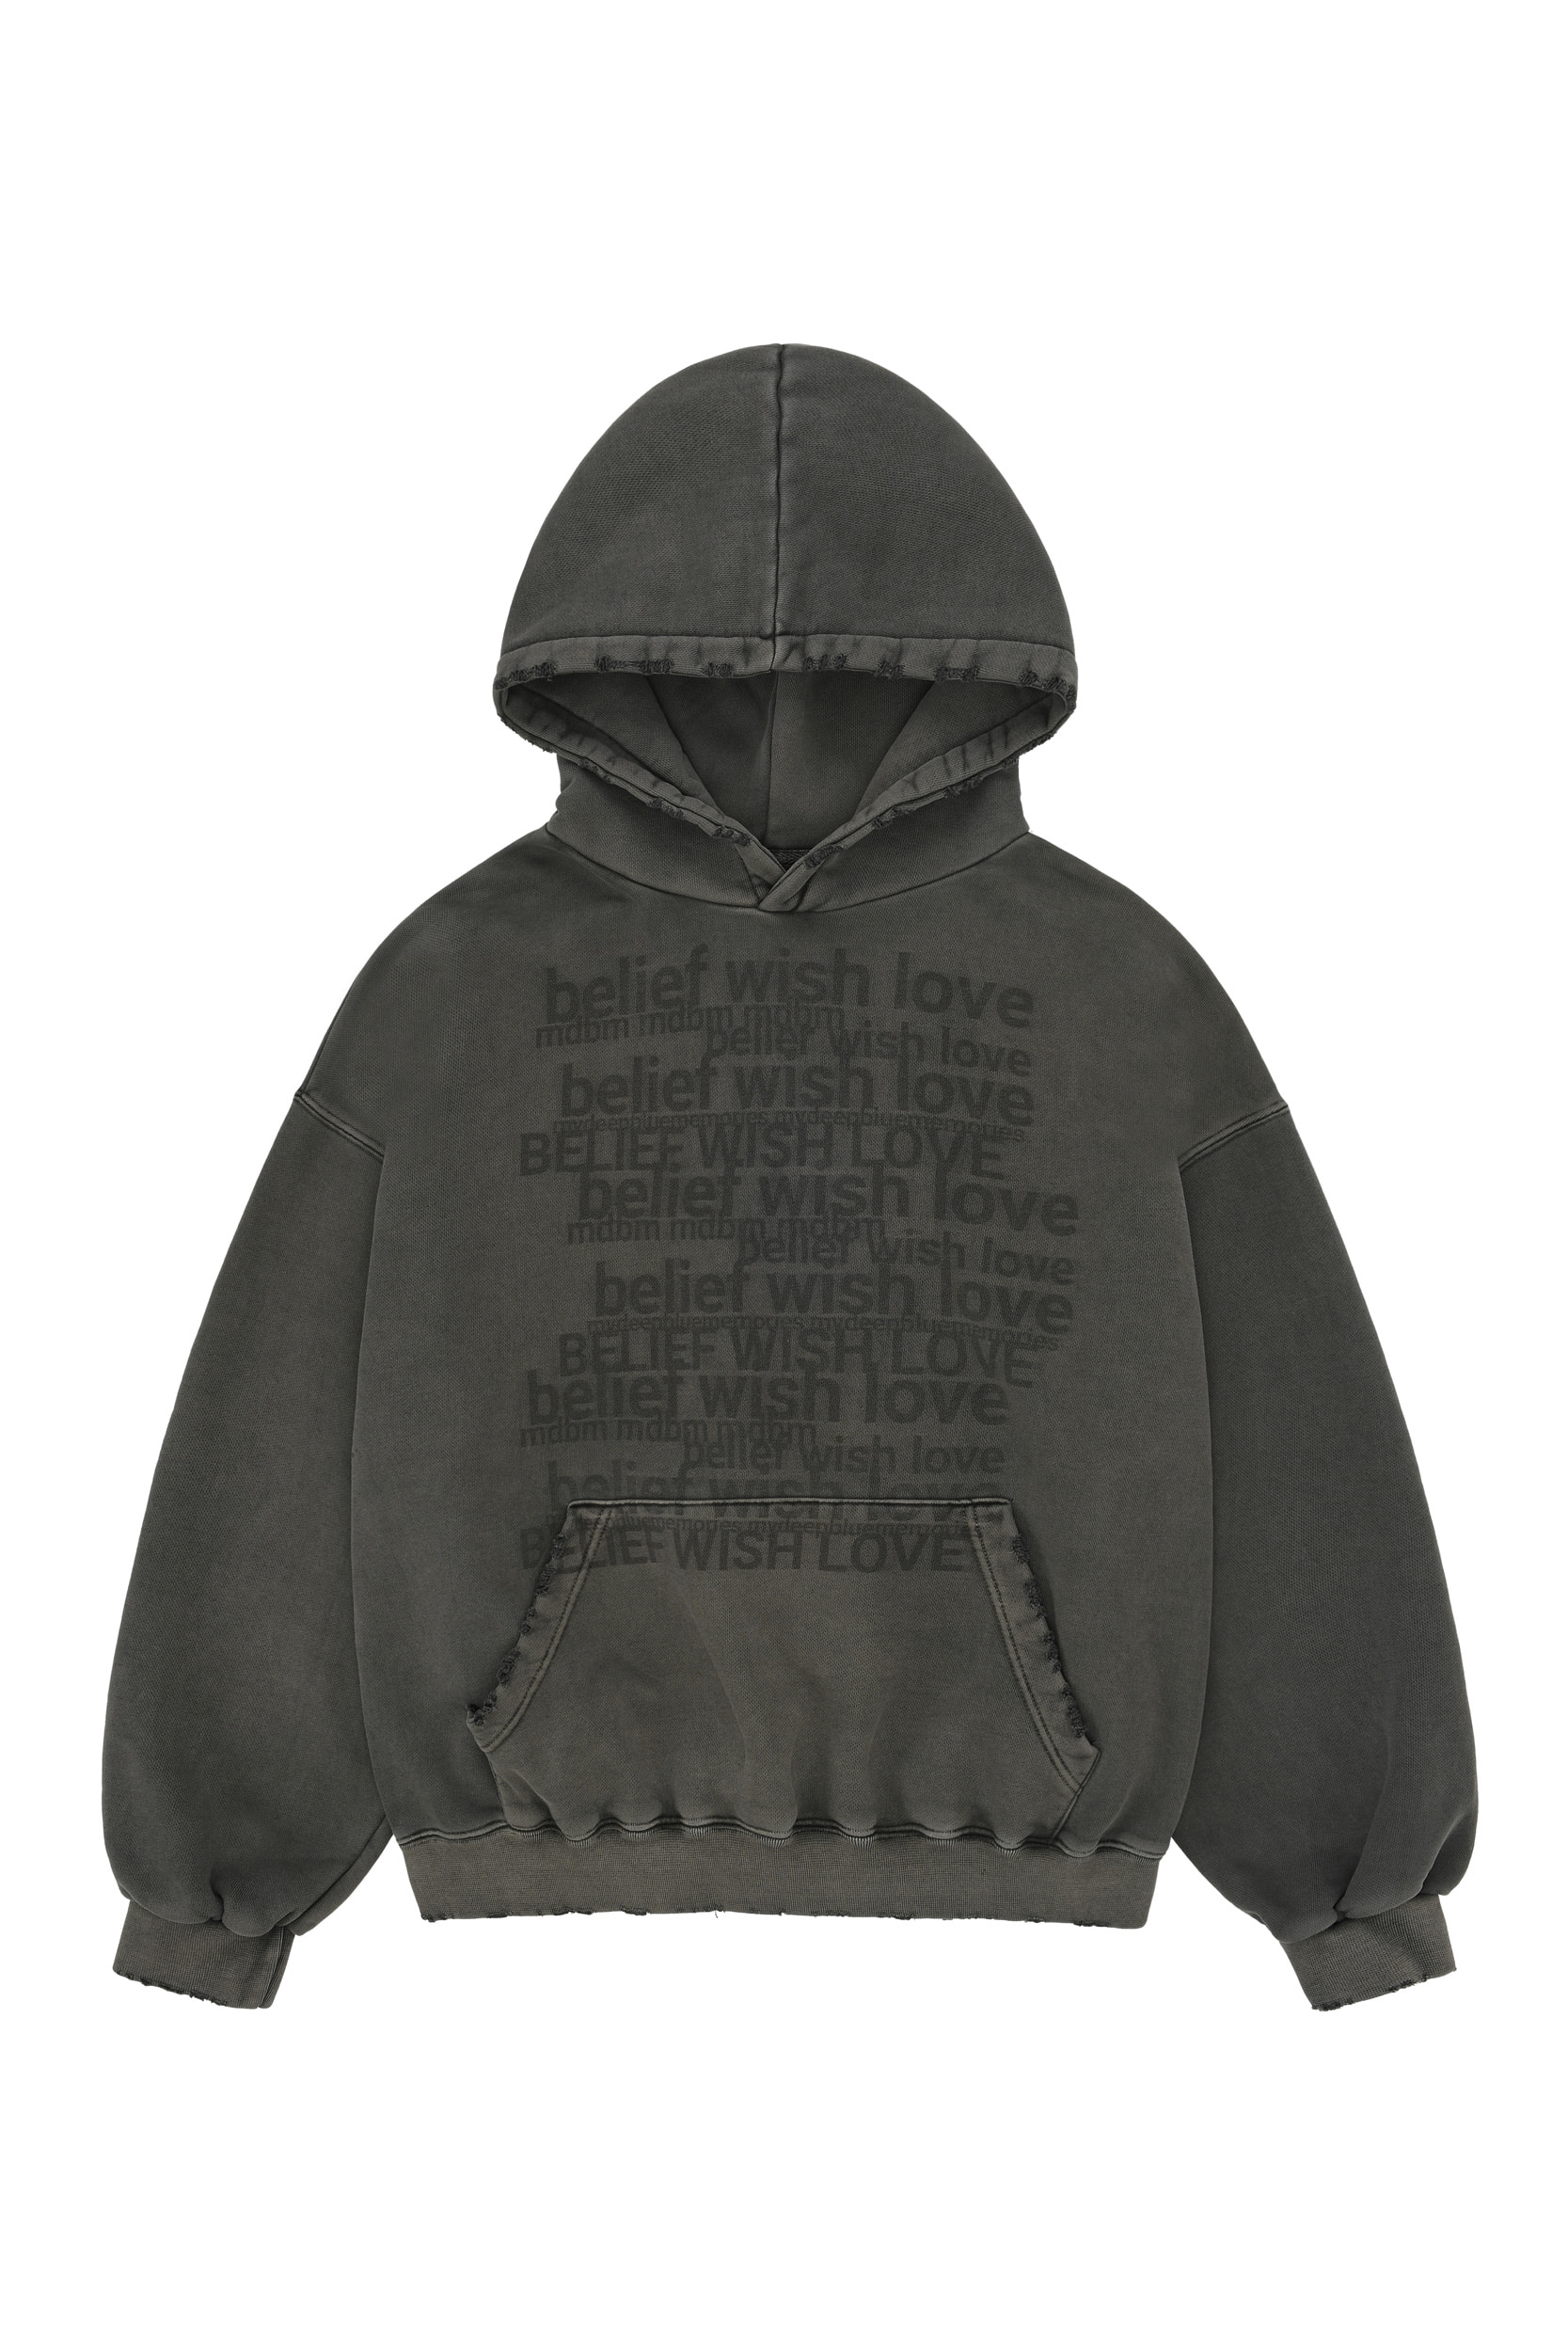 &quot;belief&quot; &quot;wish&quot; &quot;love&quot; hoodie in Charcoal